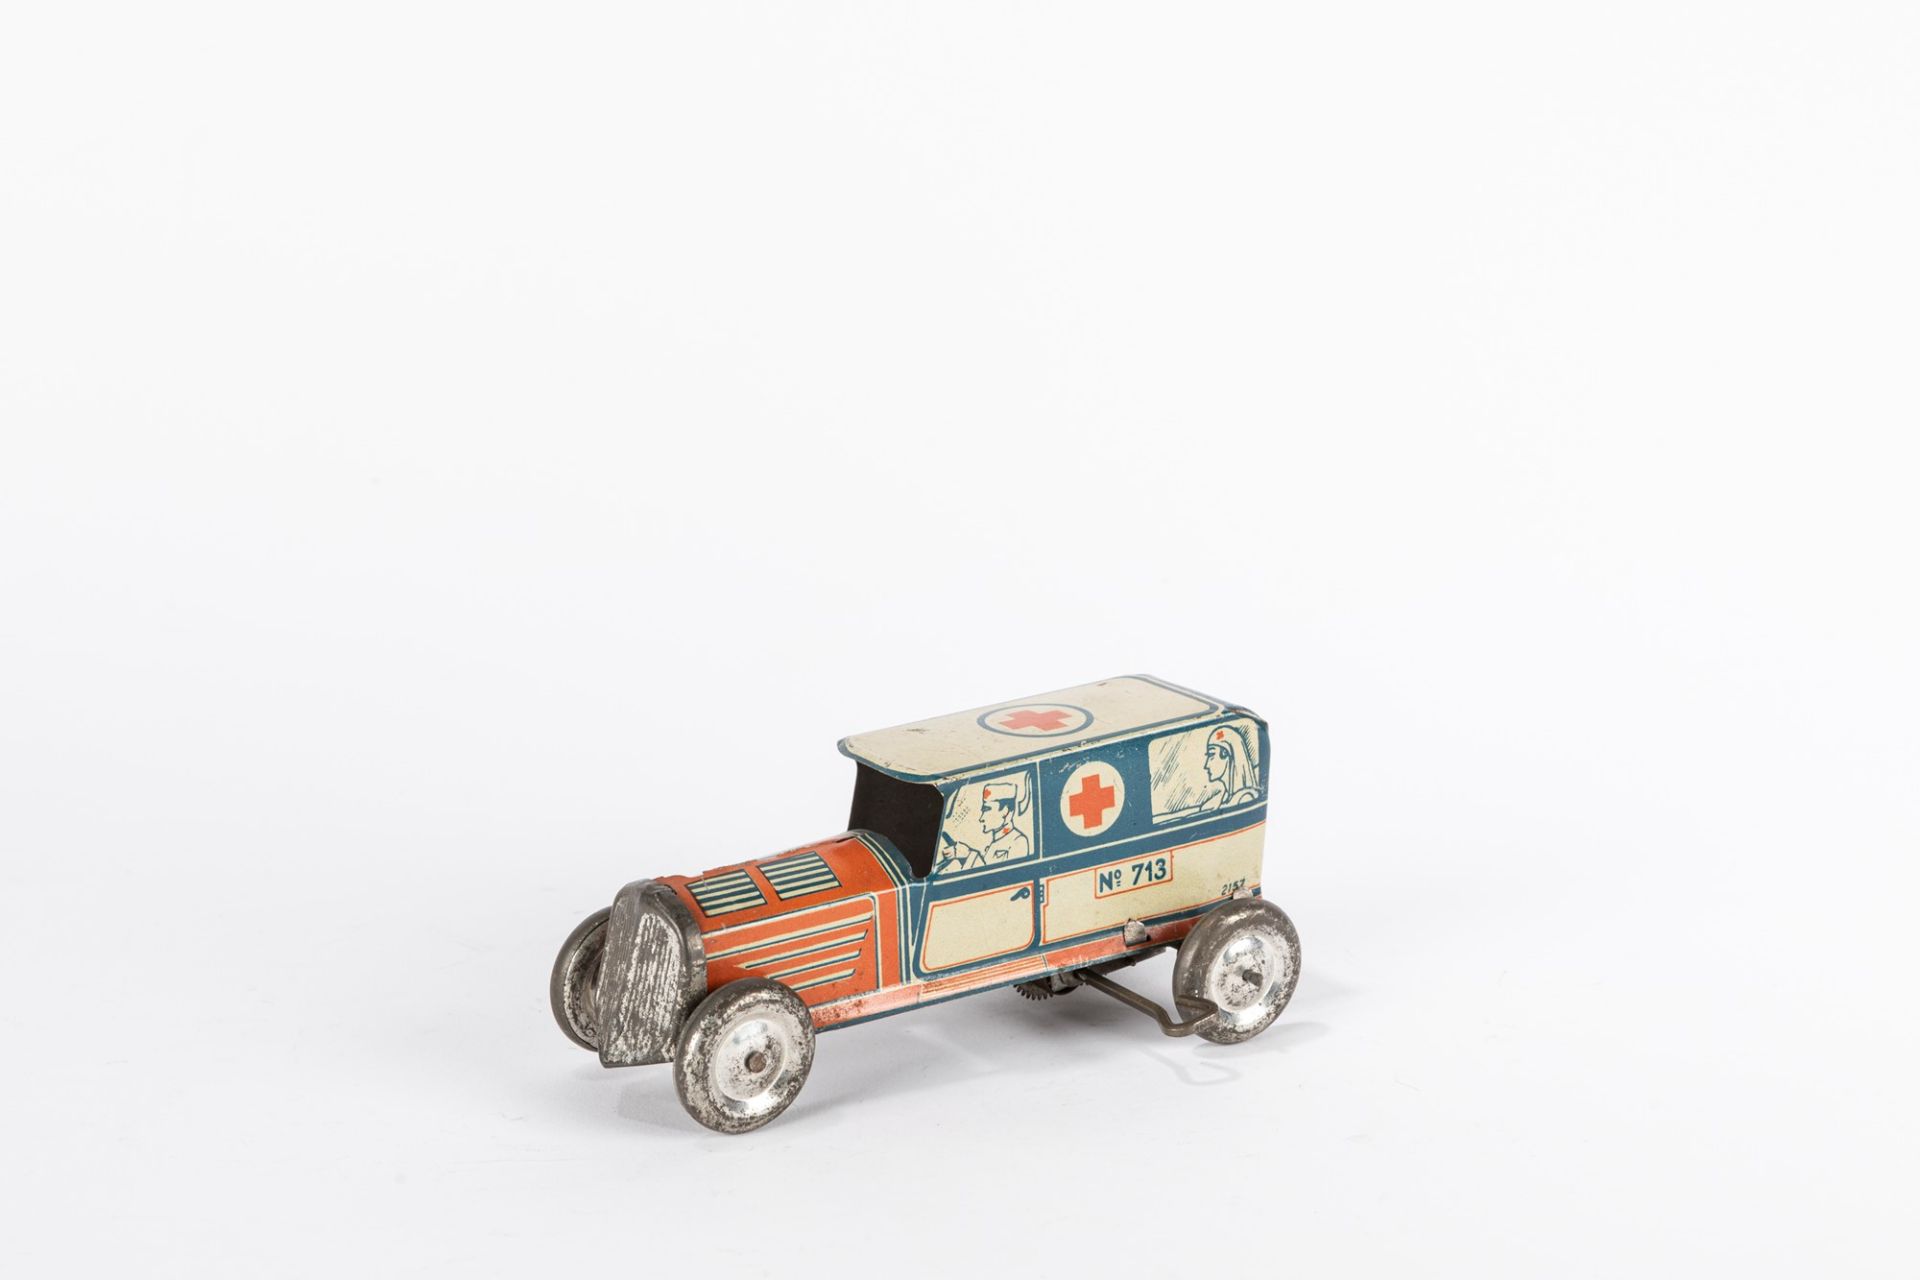 Memo - Red Cross 713 car, 40s